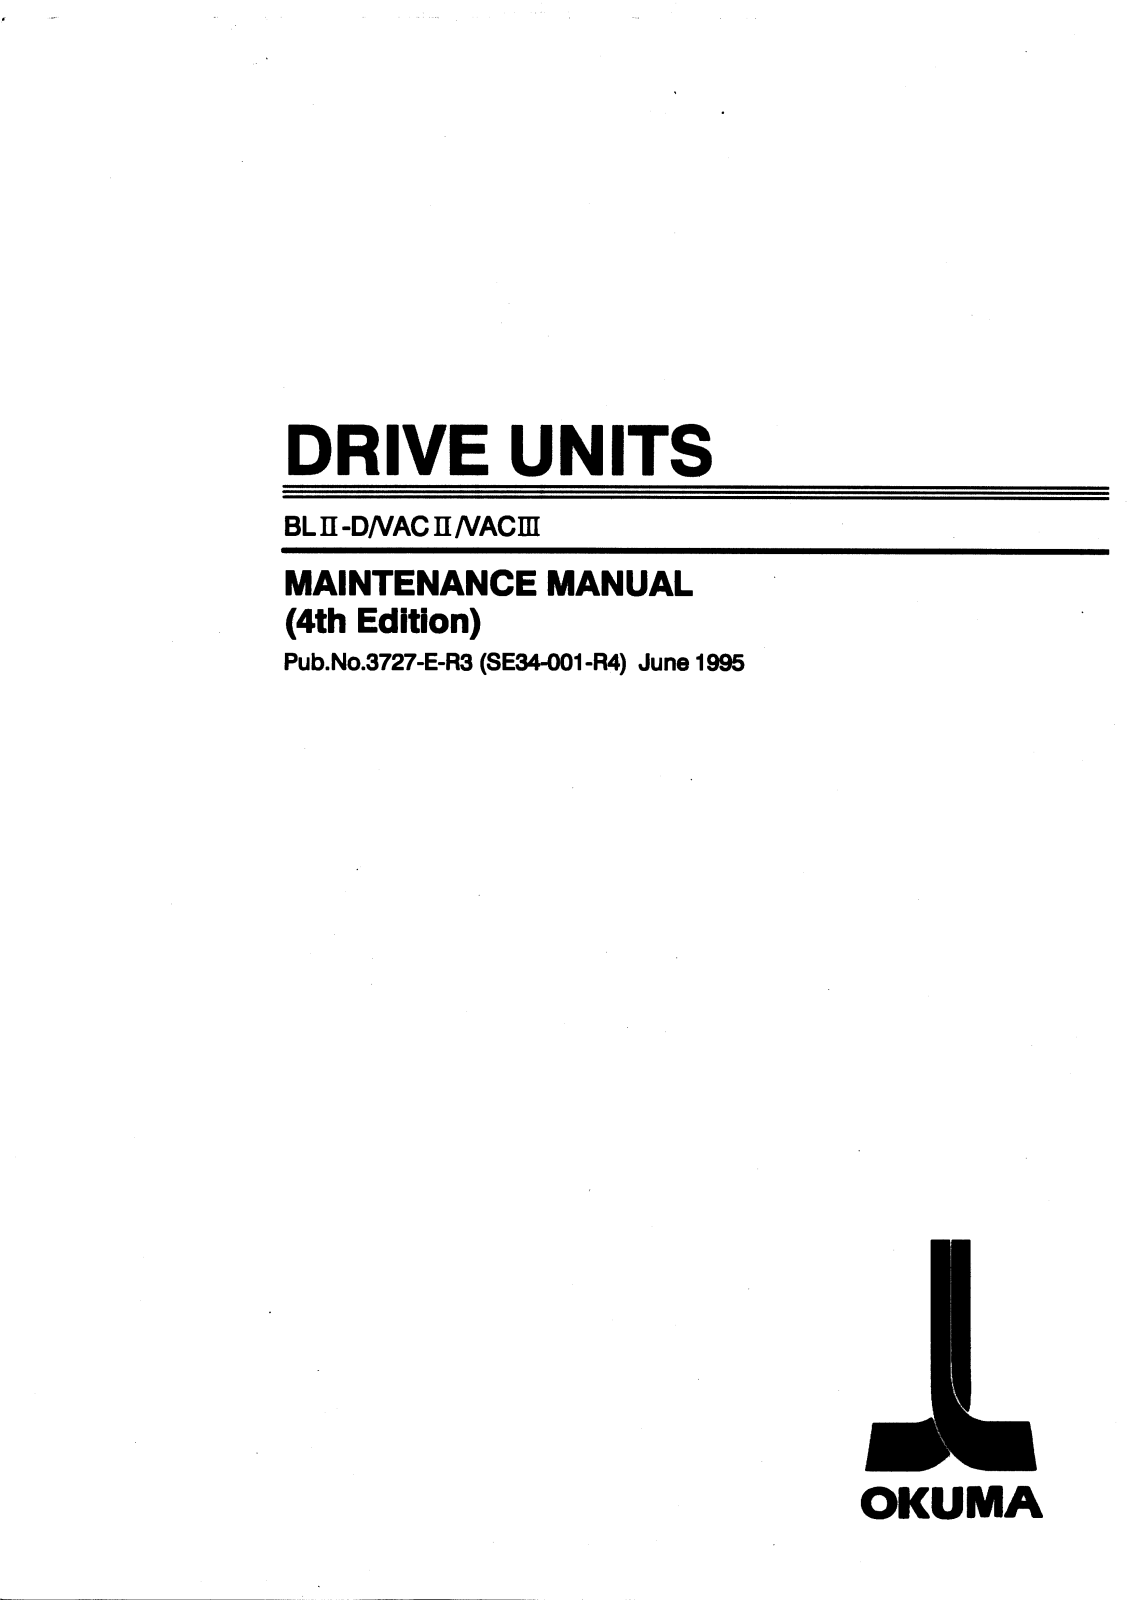 okuma BL II-D, BL VAC II, BL VAC III Maintenance Manual